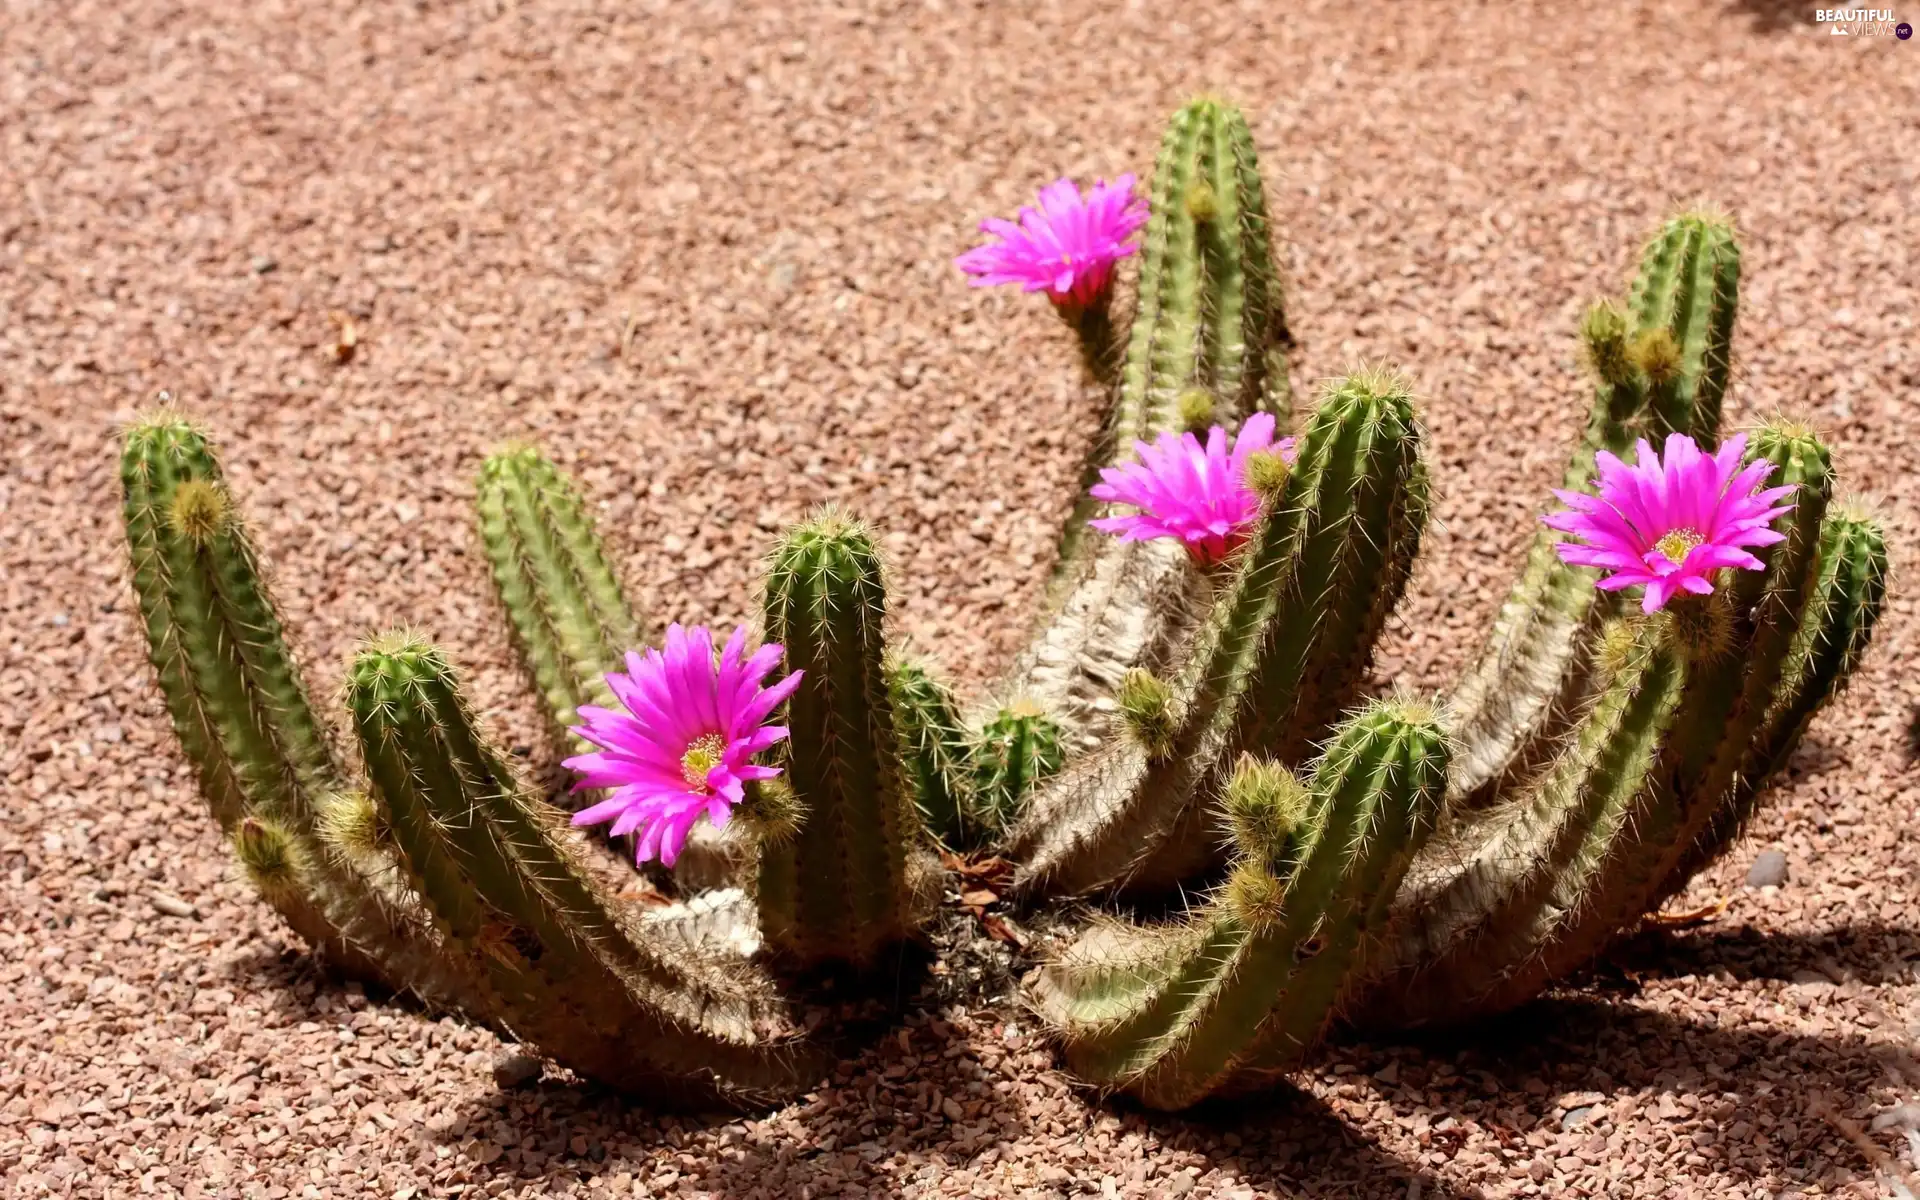 Desert, flower, Cactus